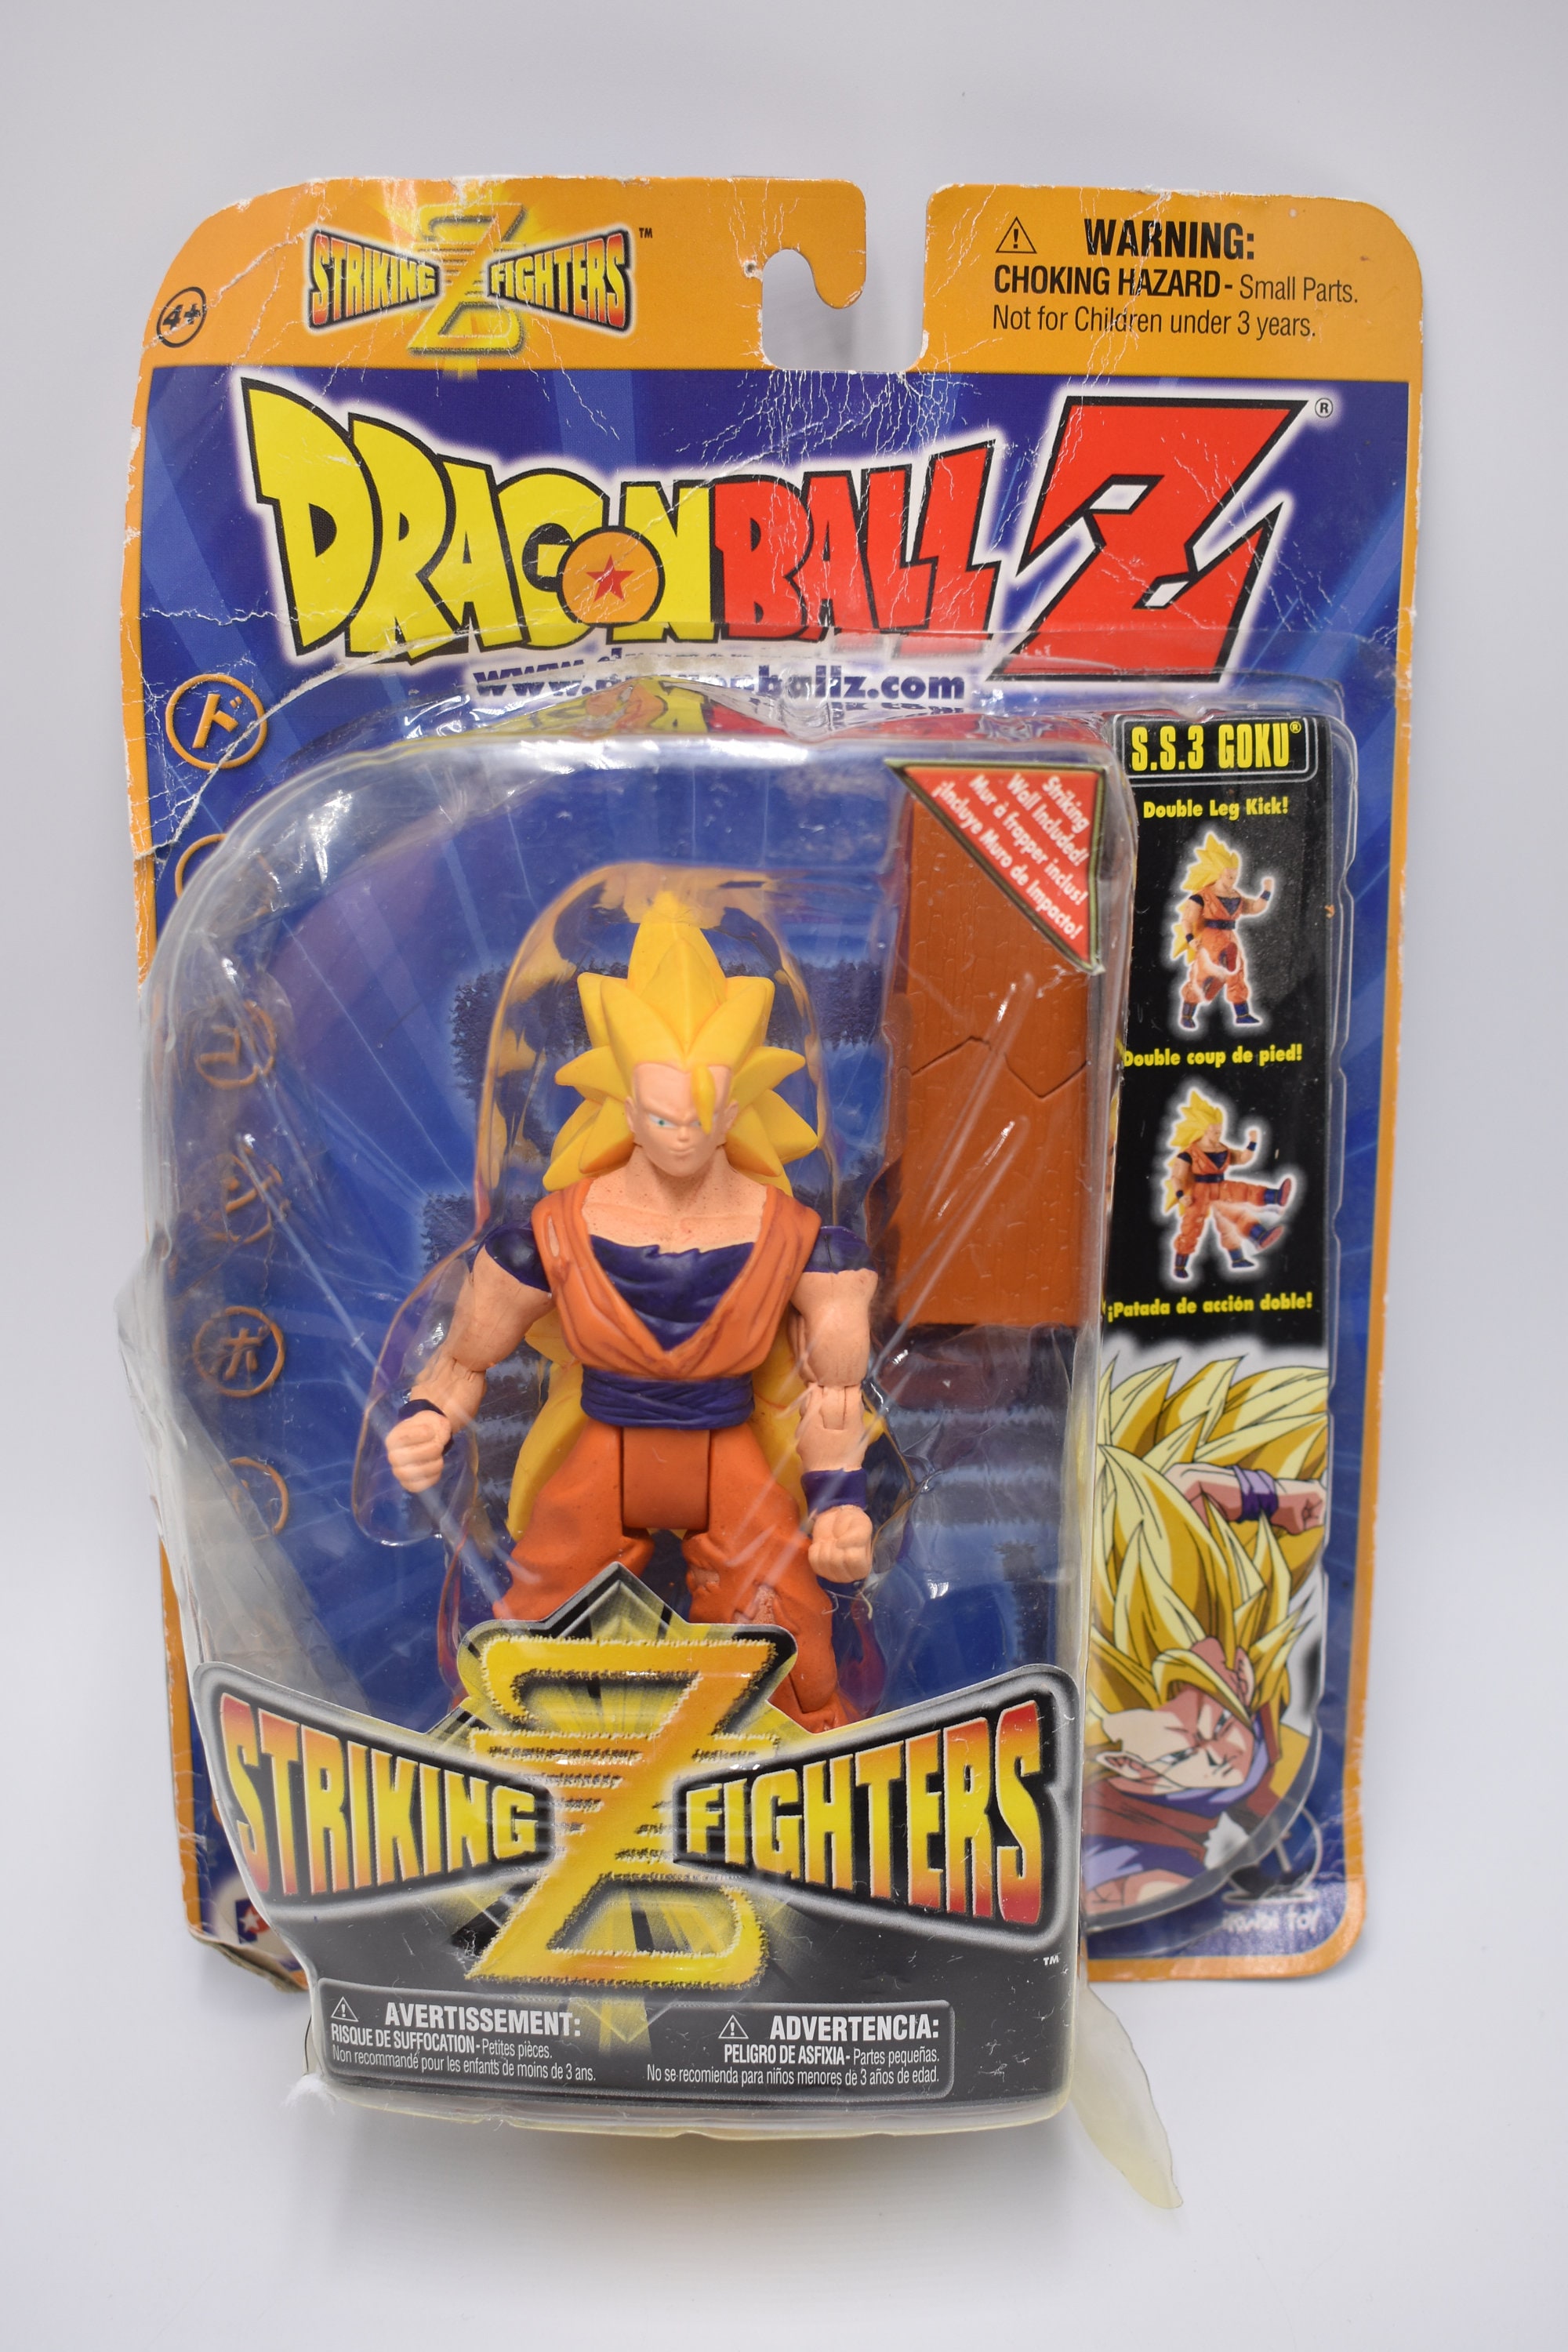 Dragon Ball Super Saiyan Goku Action Figures, Cabelo azul Modelos,  Brinquedos colecionáveis